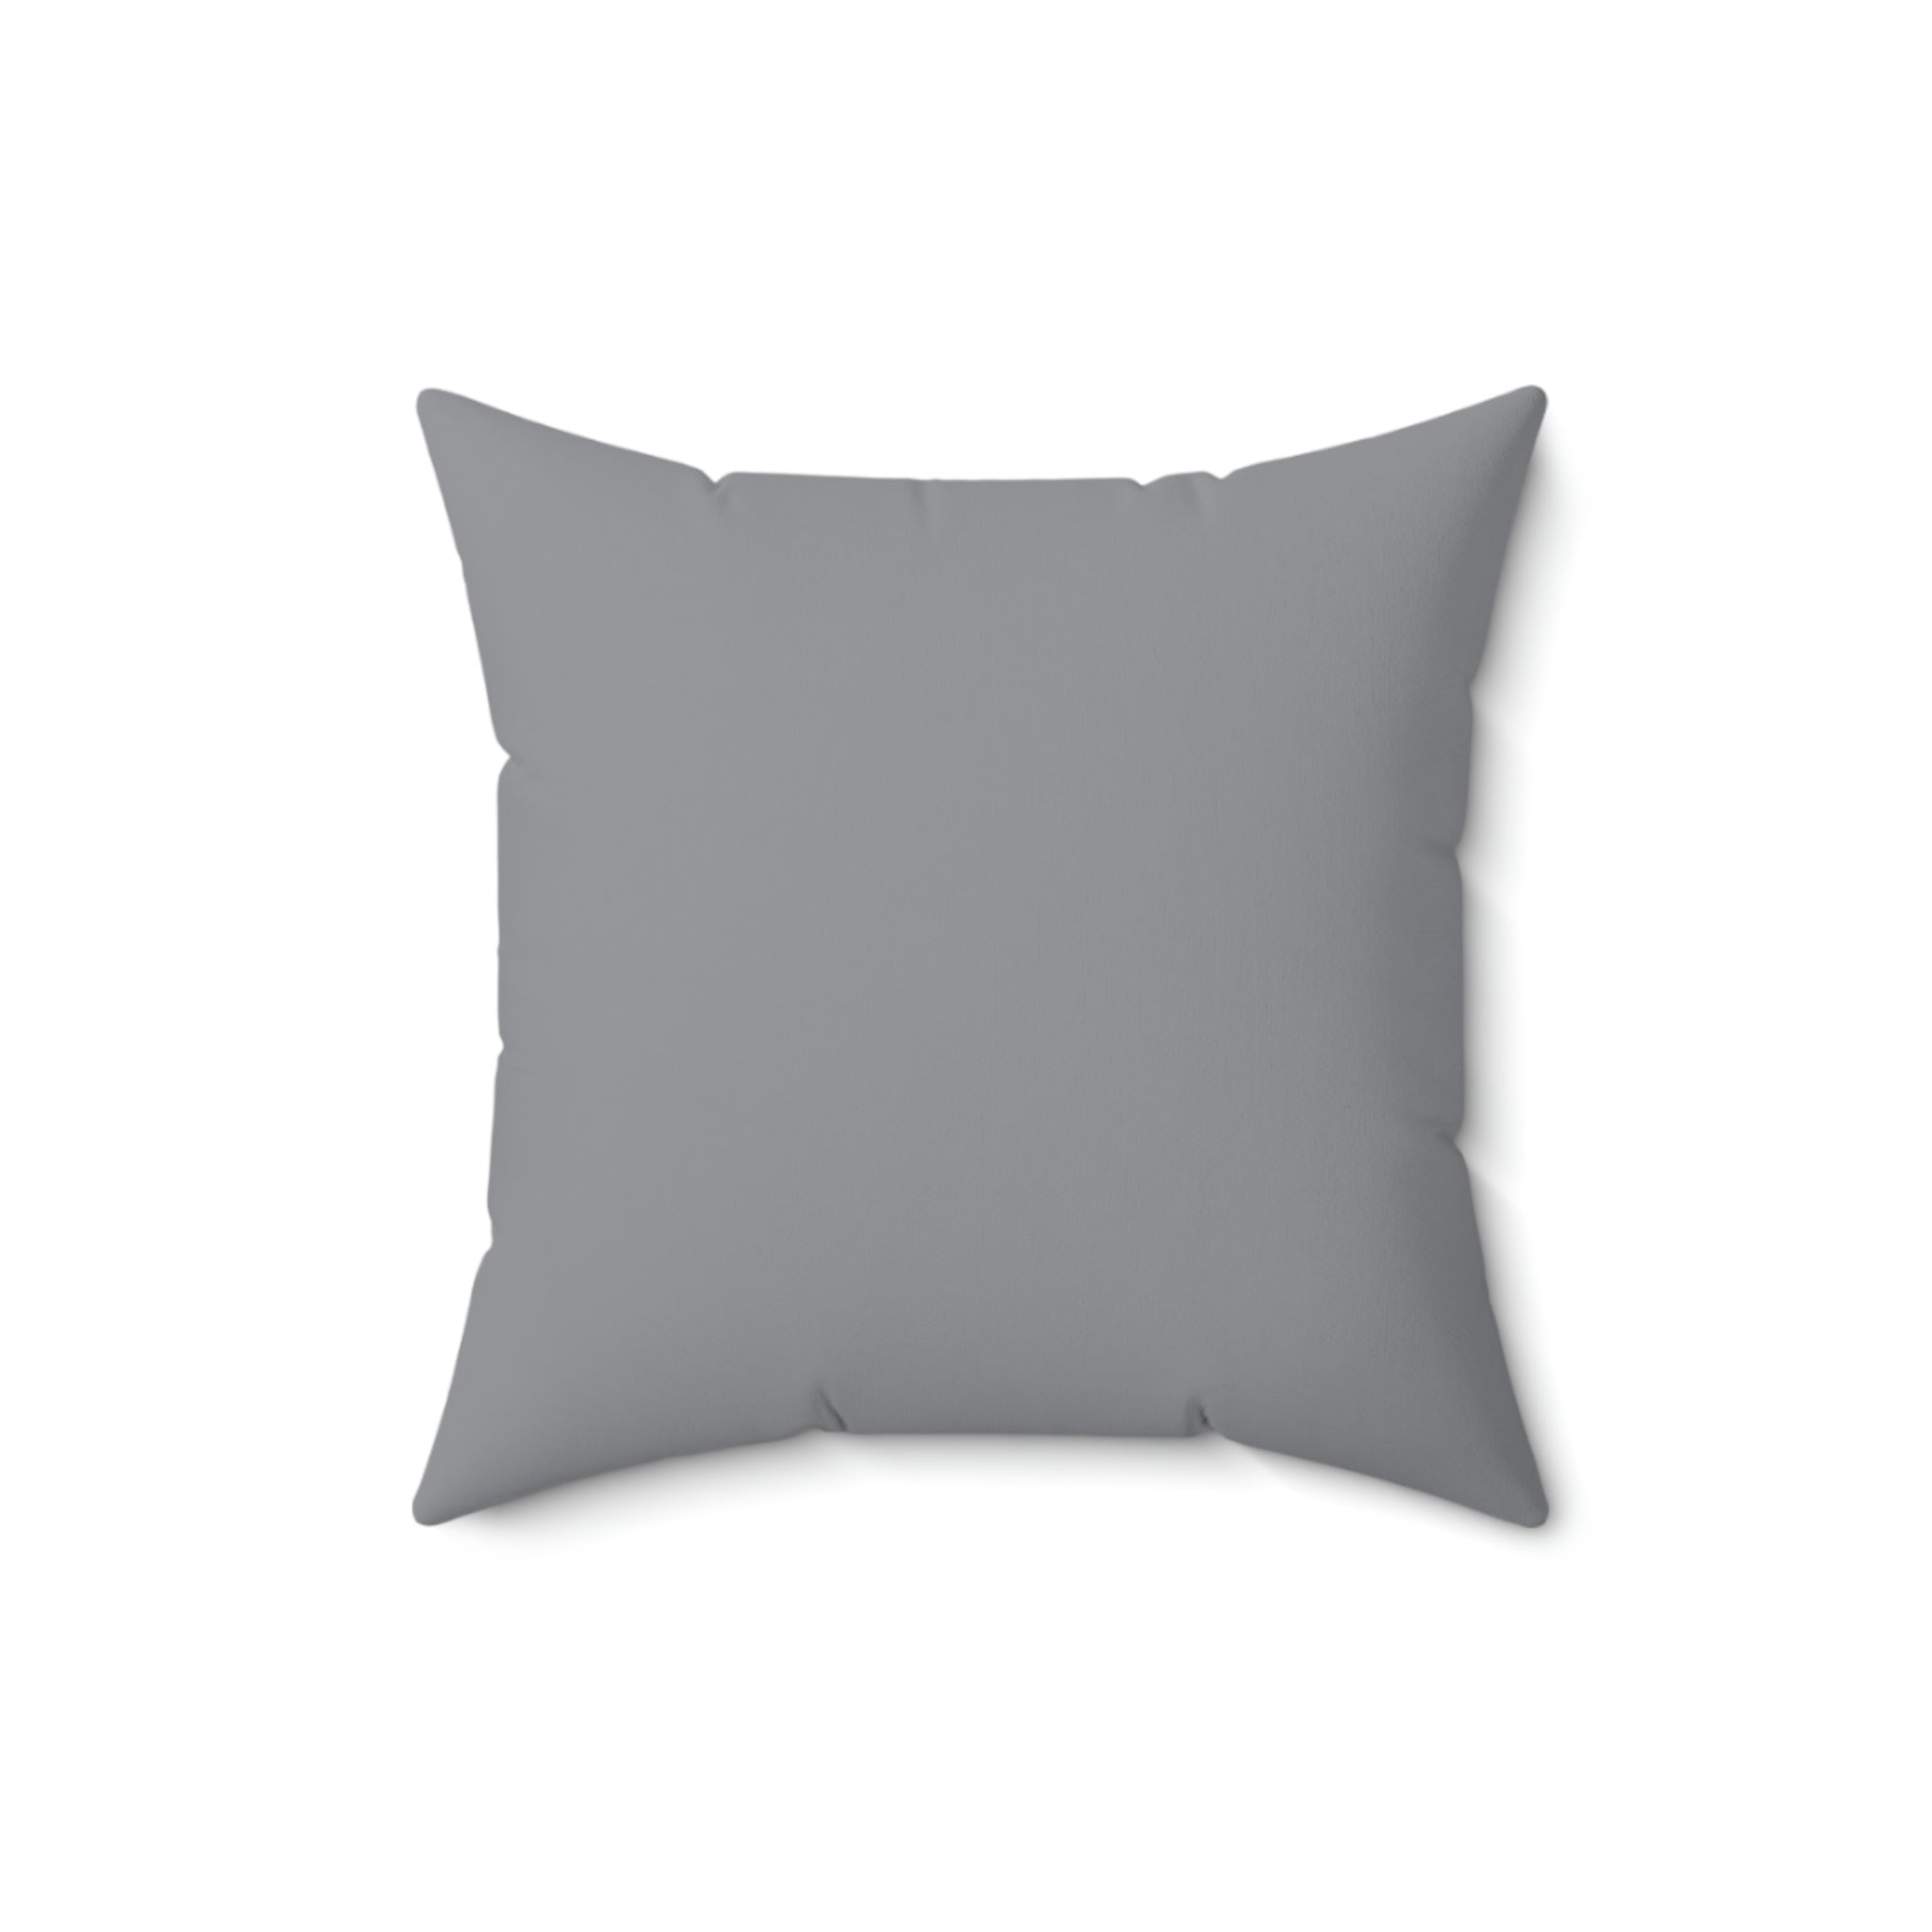 Spun Polyester Pillow Happy Face grey pattern m